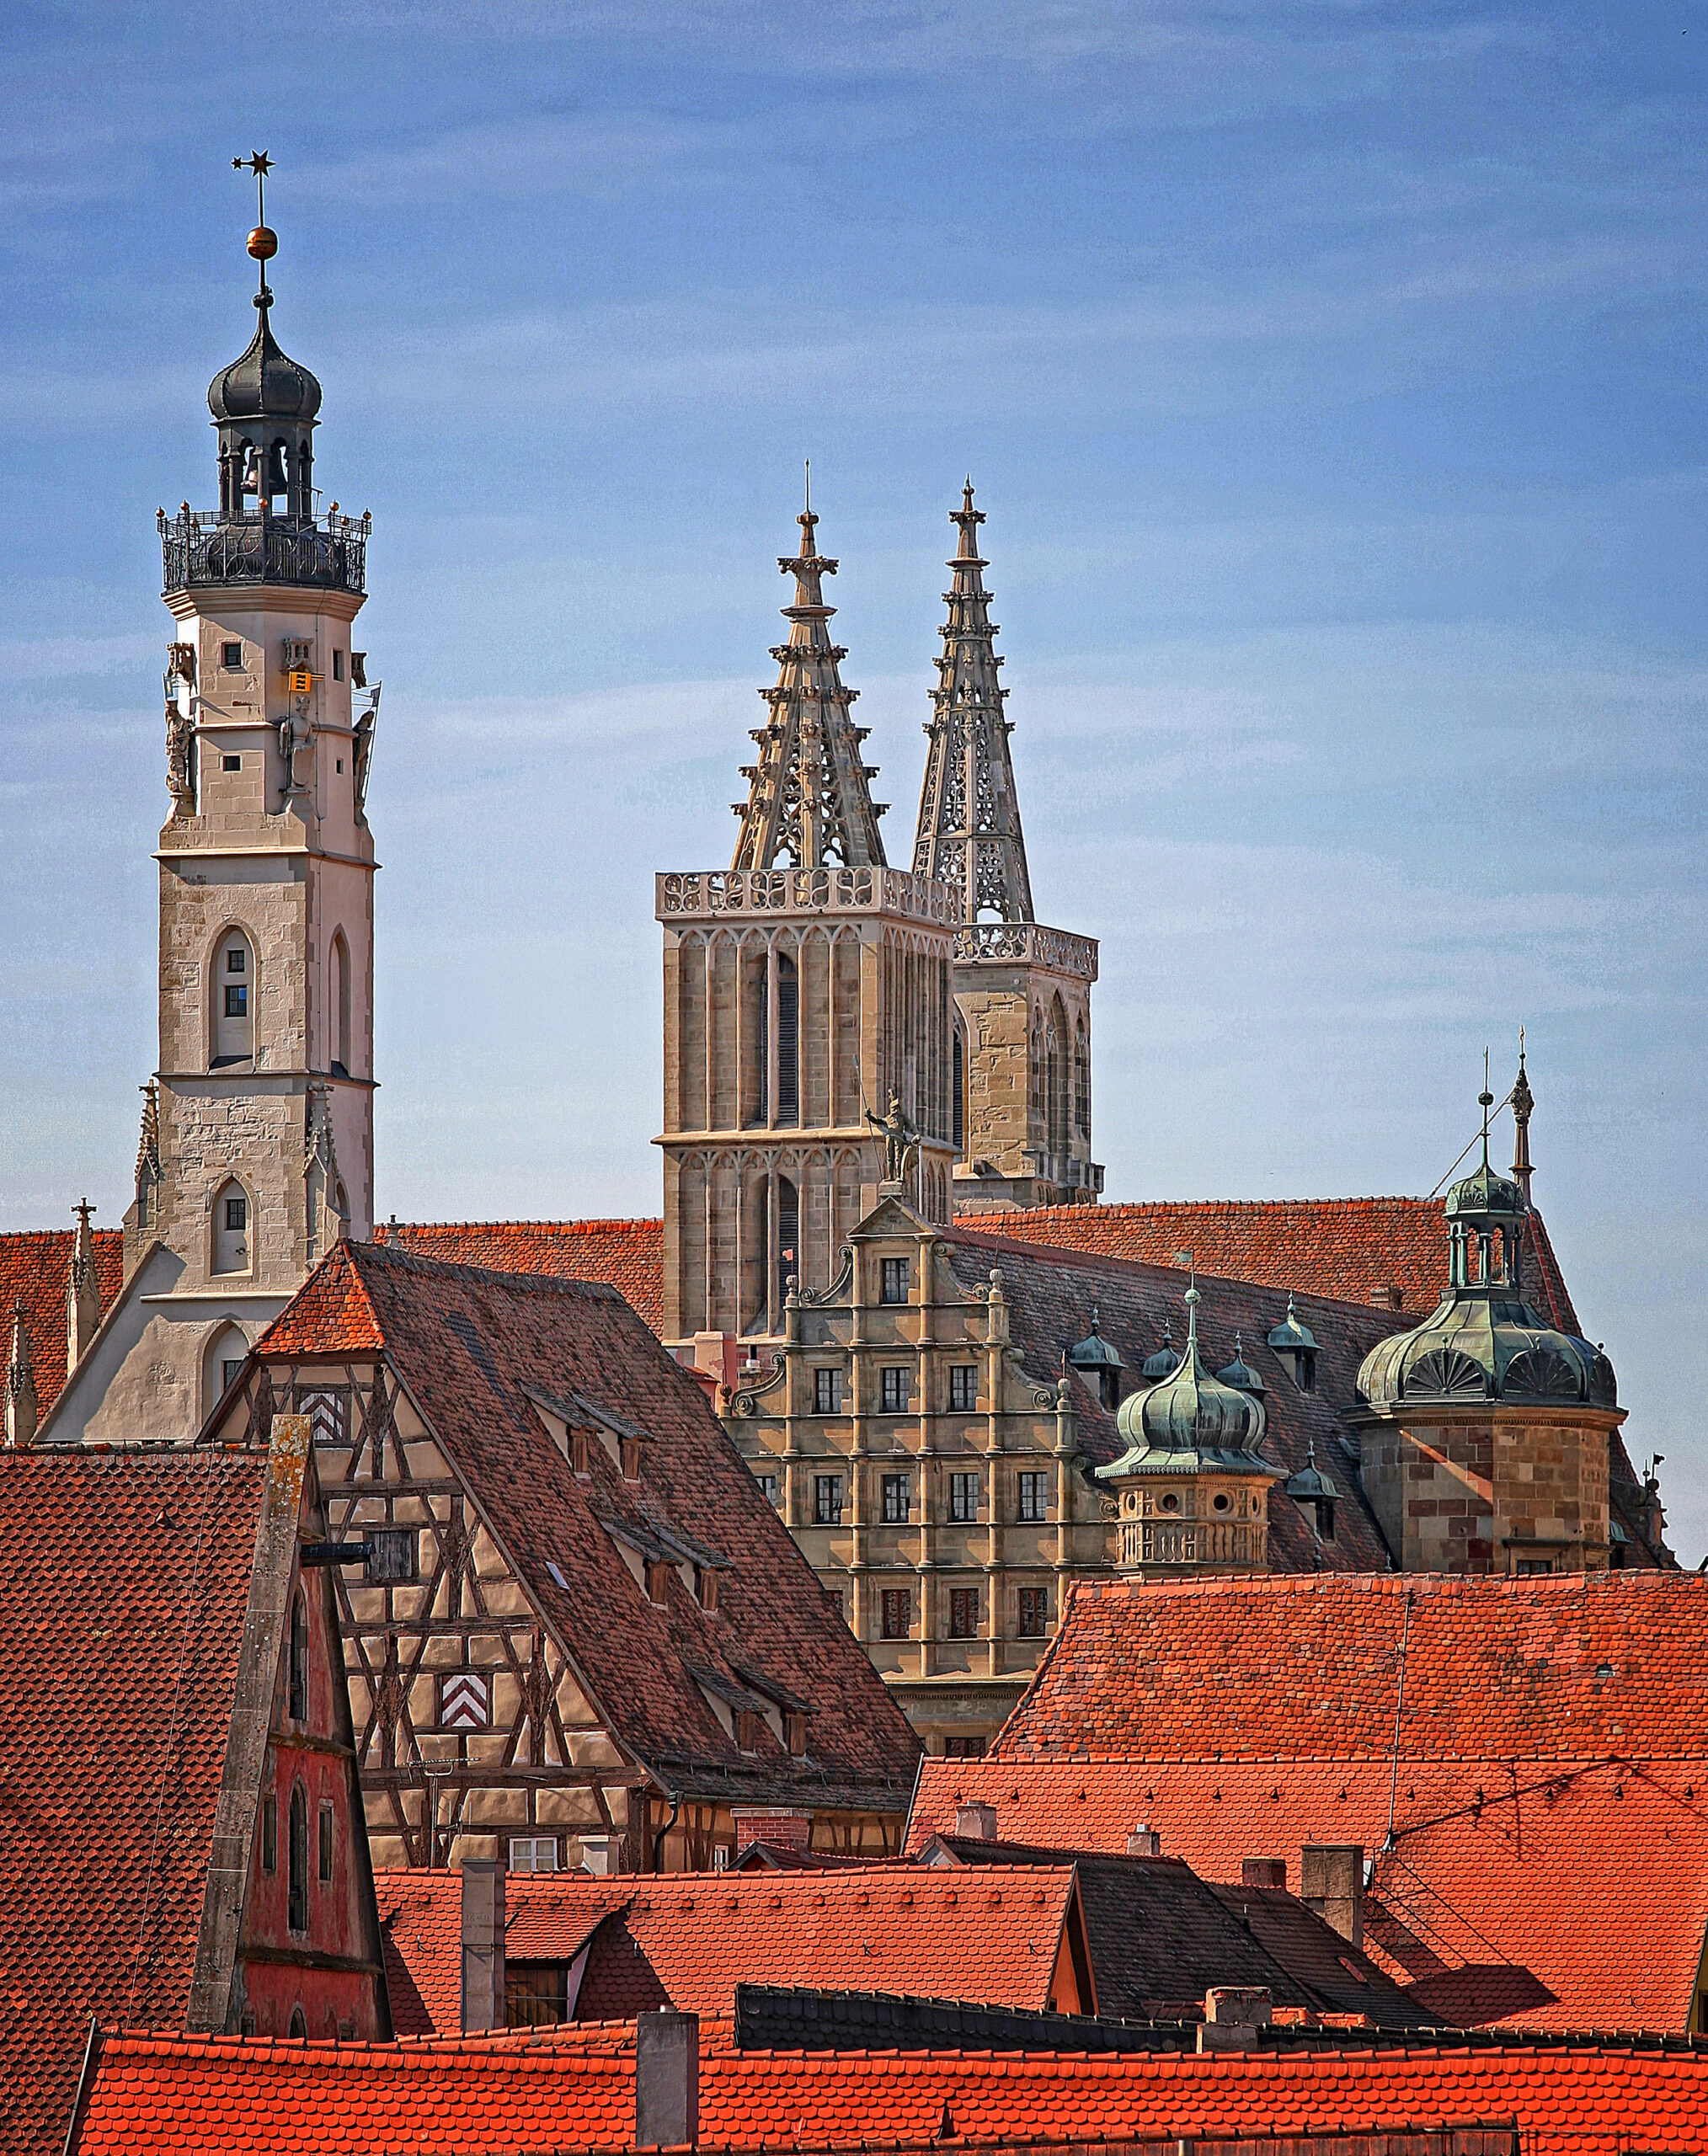 In Rothenburg ob der Tauber treffen gleich sechs Jakobswege aufeinander. Zentraler Anlaufpunkt für Wallfahrer in Rothenburg ist die St.-Jakobs-Kirche mit dem von Tilman Riemenschneider geschaffenen Heilig-Blut-Altar. Während 